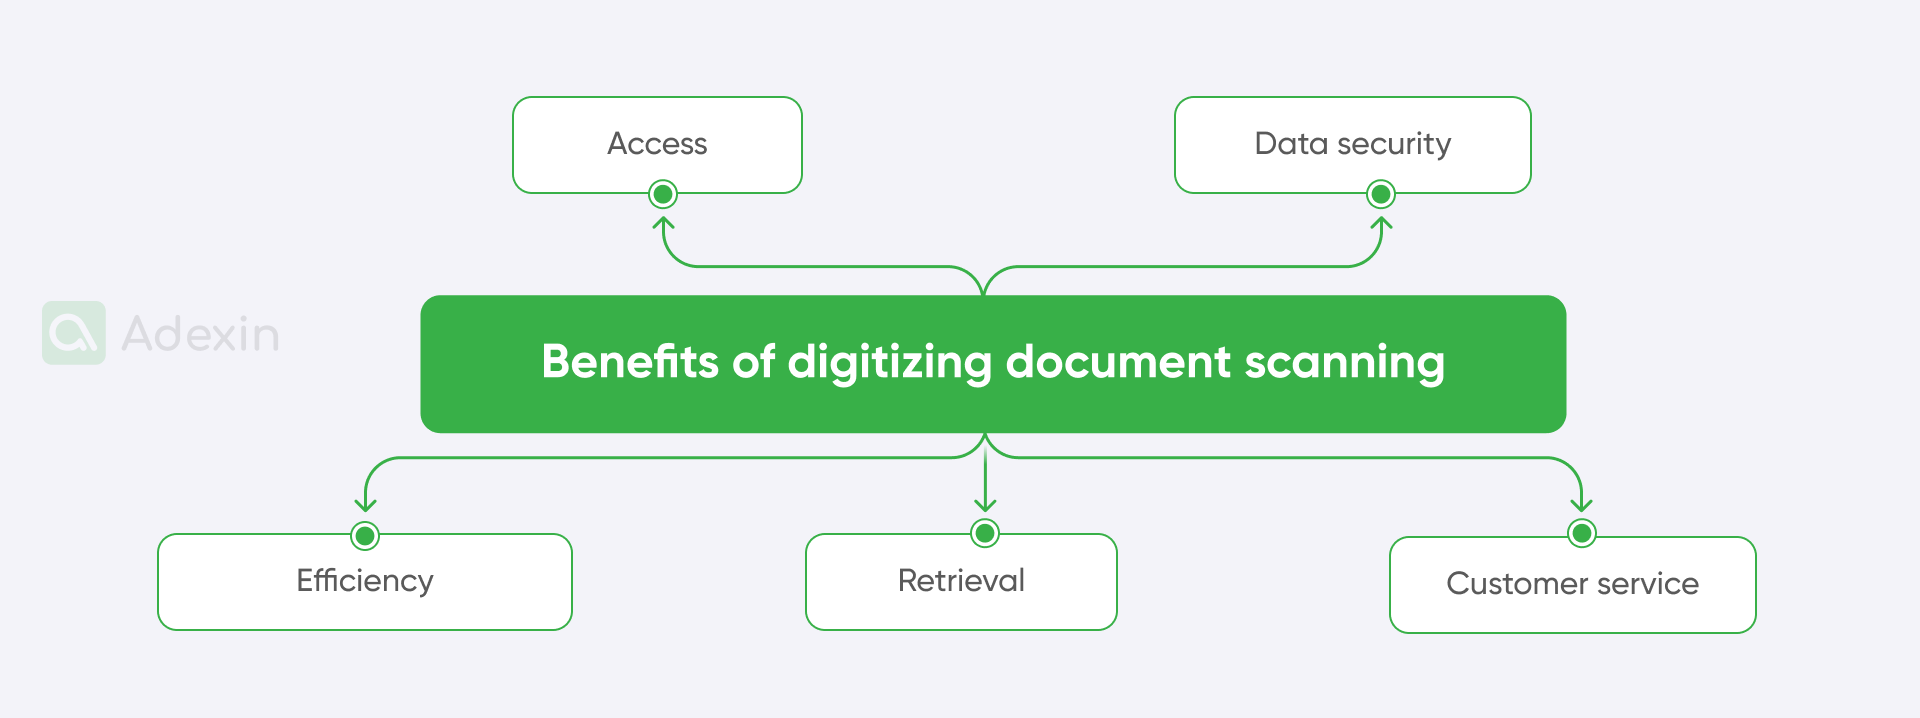 Benefits of digitizing document scanning